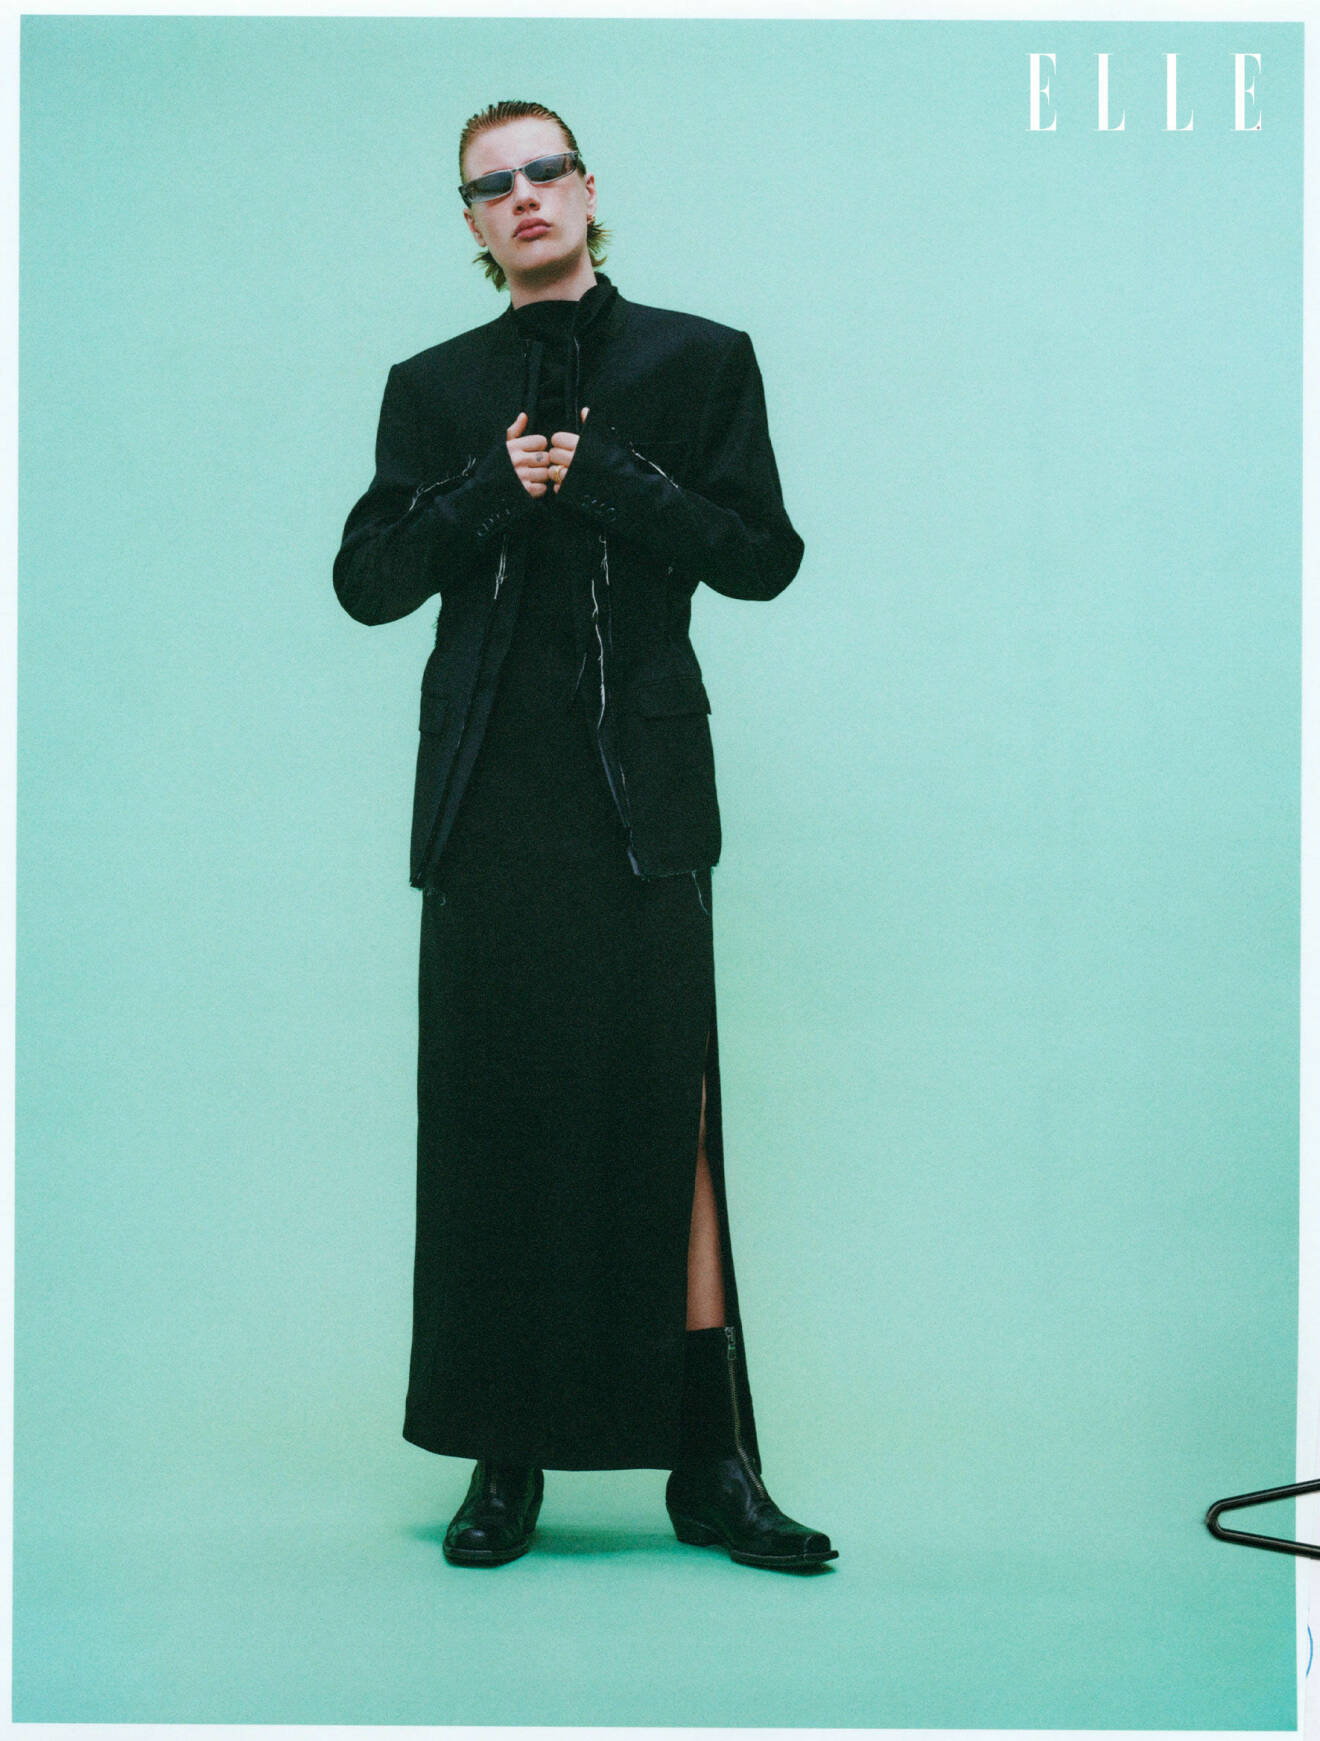 Årets modell Elio bär en dekonstruerad kavaj från Hodakova, och en svart klänning från Hope.